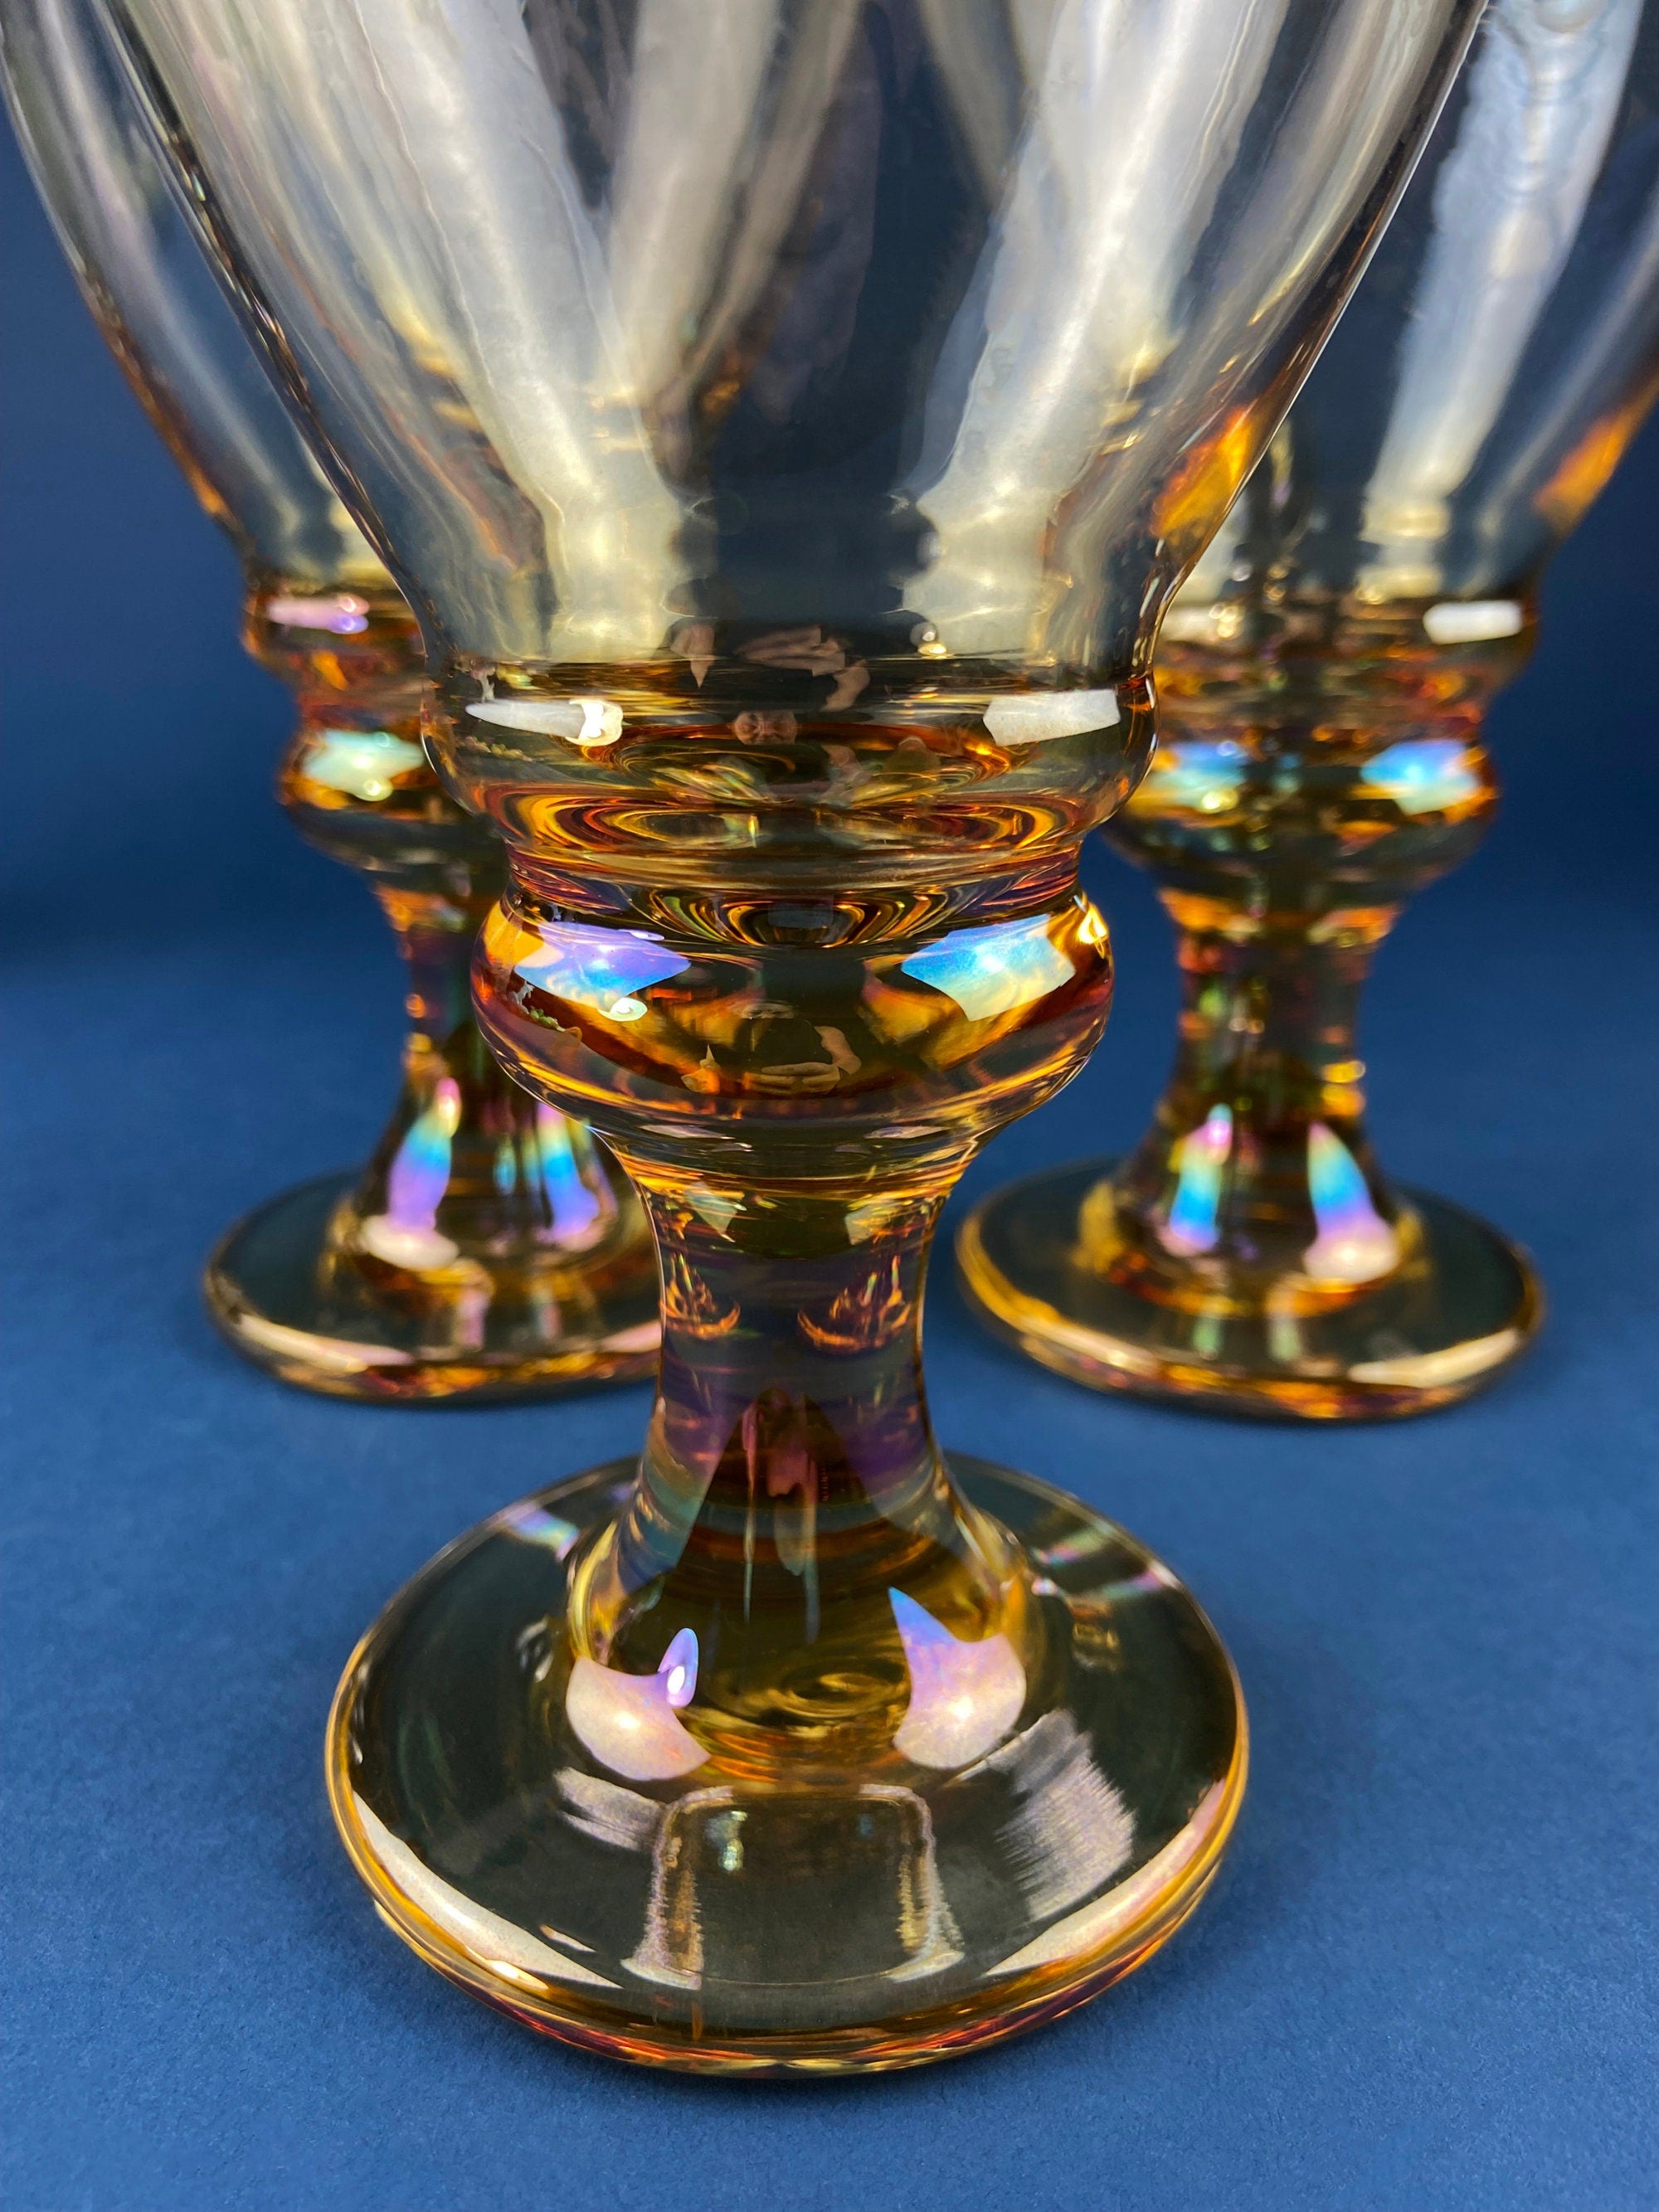 LARGE GOBLET GOLD STEM GLASS SETS